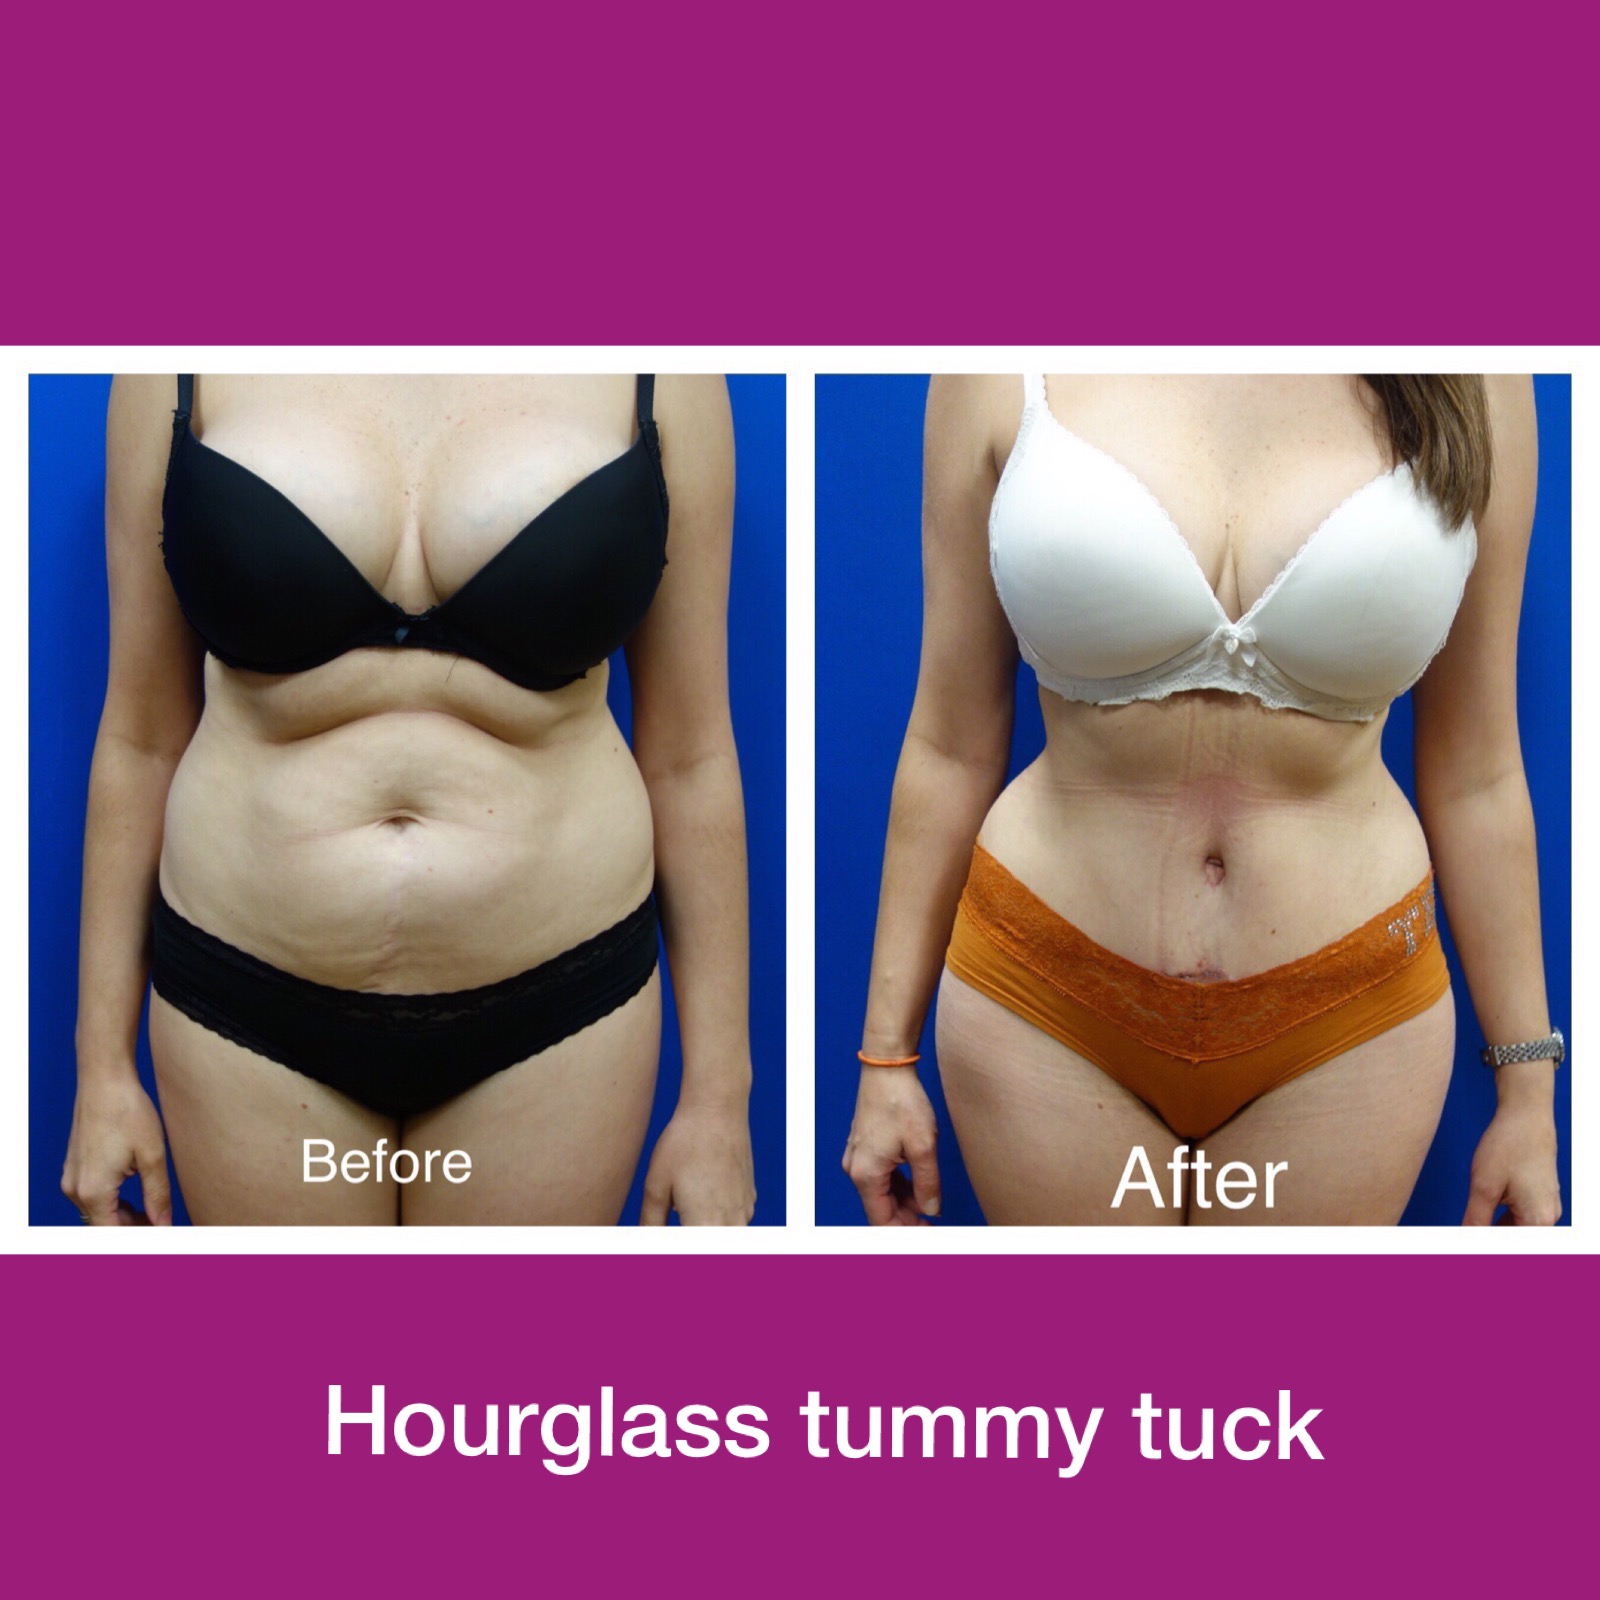 Hourglass Tummy Tuck vs. Regular Tummy Tuck